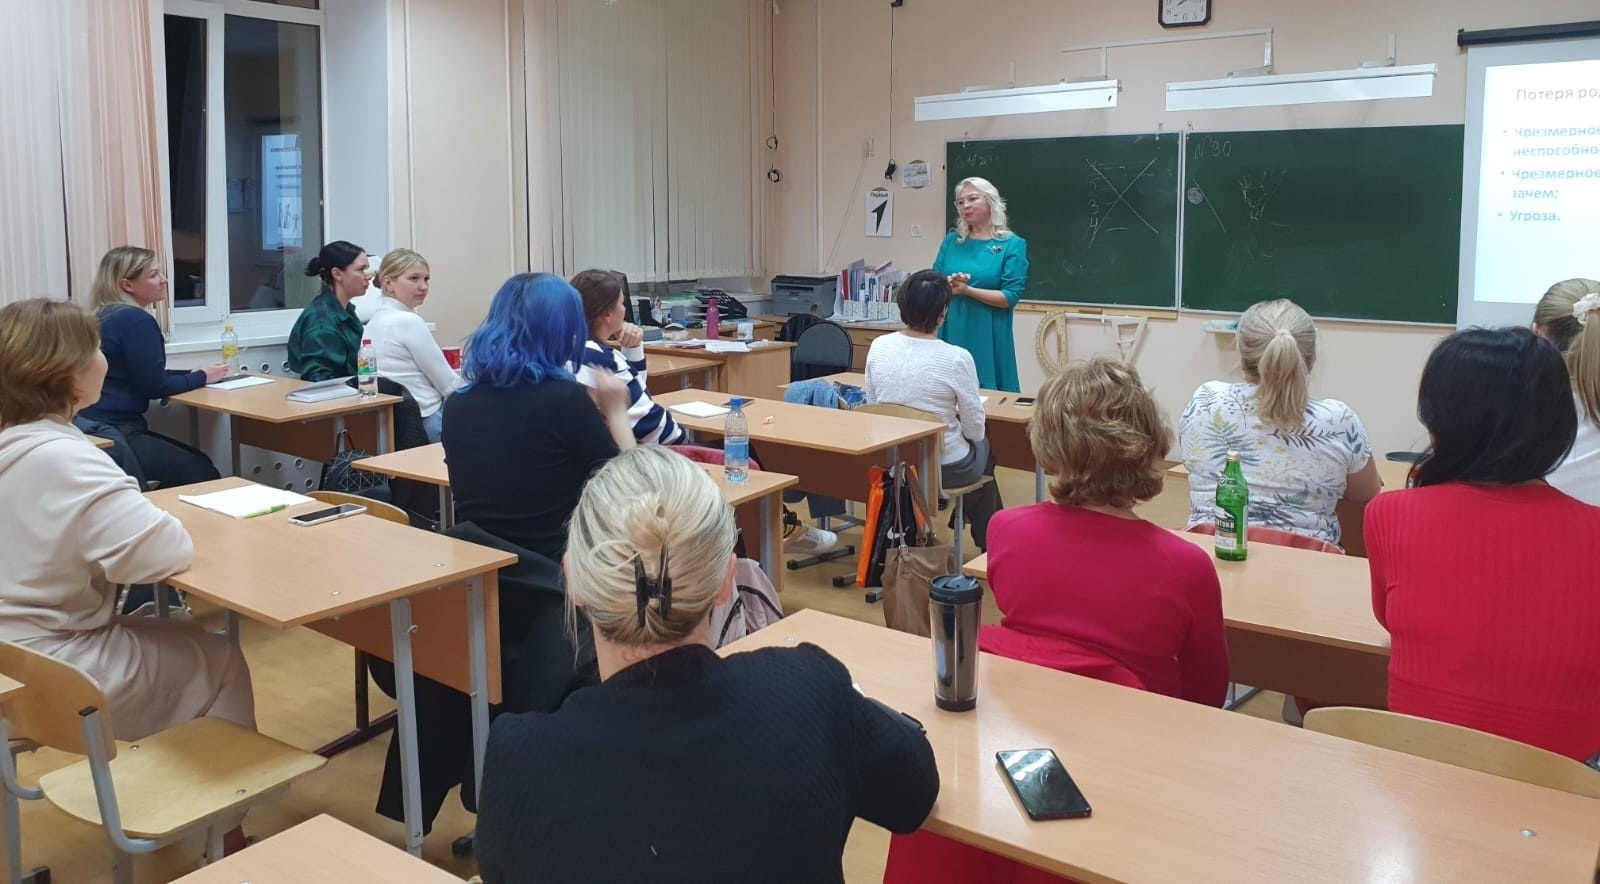 Педагог-психолог Гульнара Рифхатовна Тарасова, провела родительские лектории на тему: "Школьный буллинг